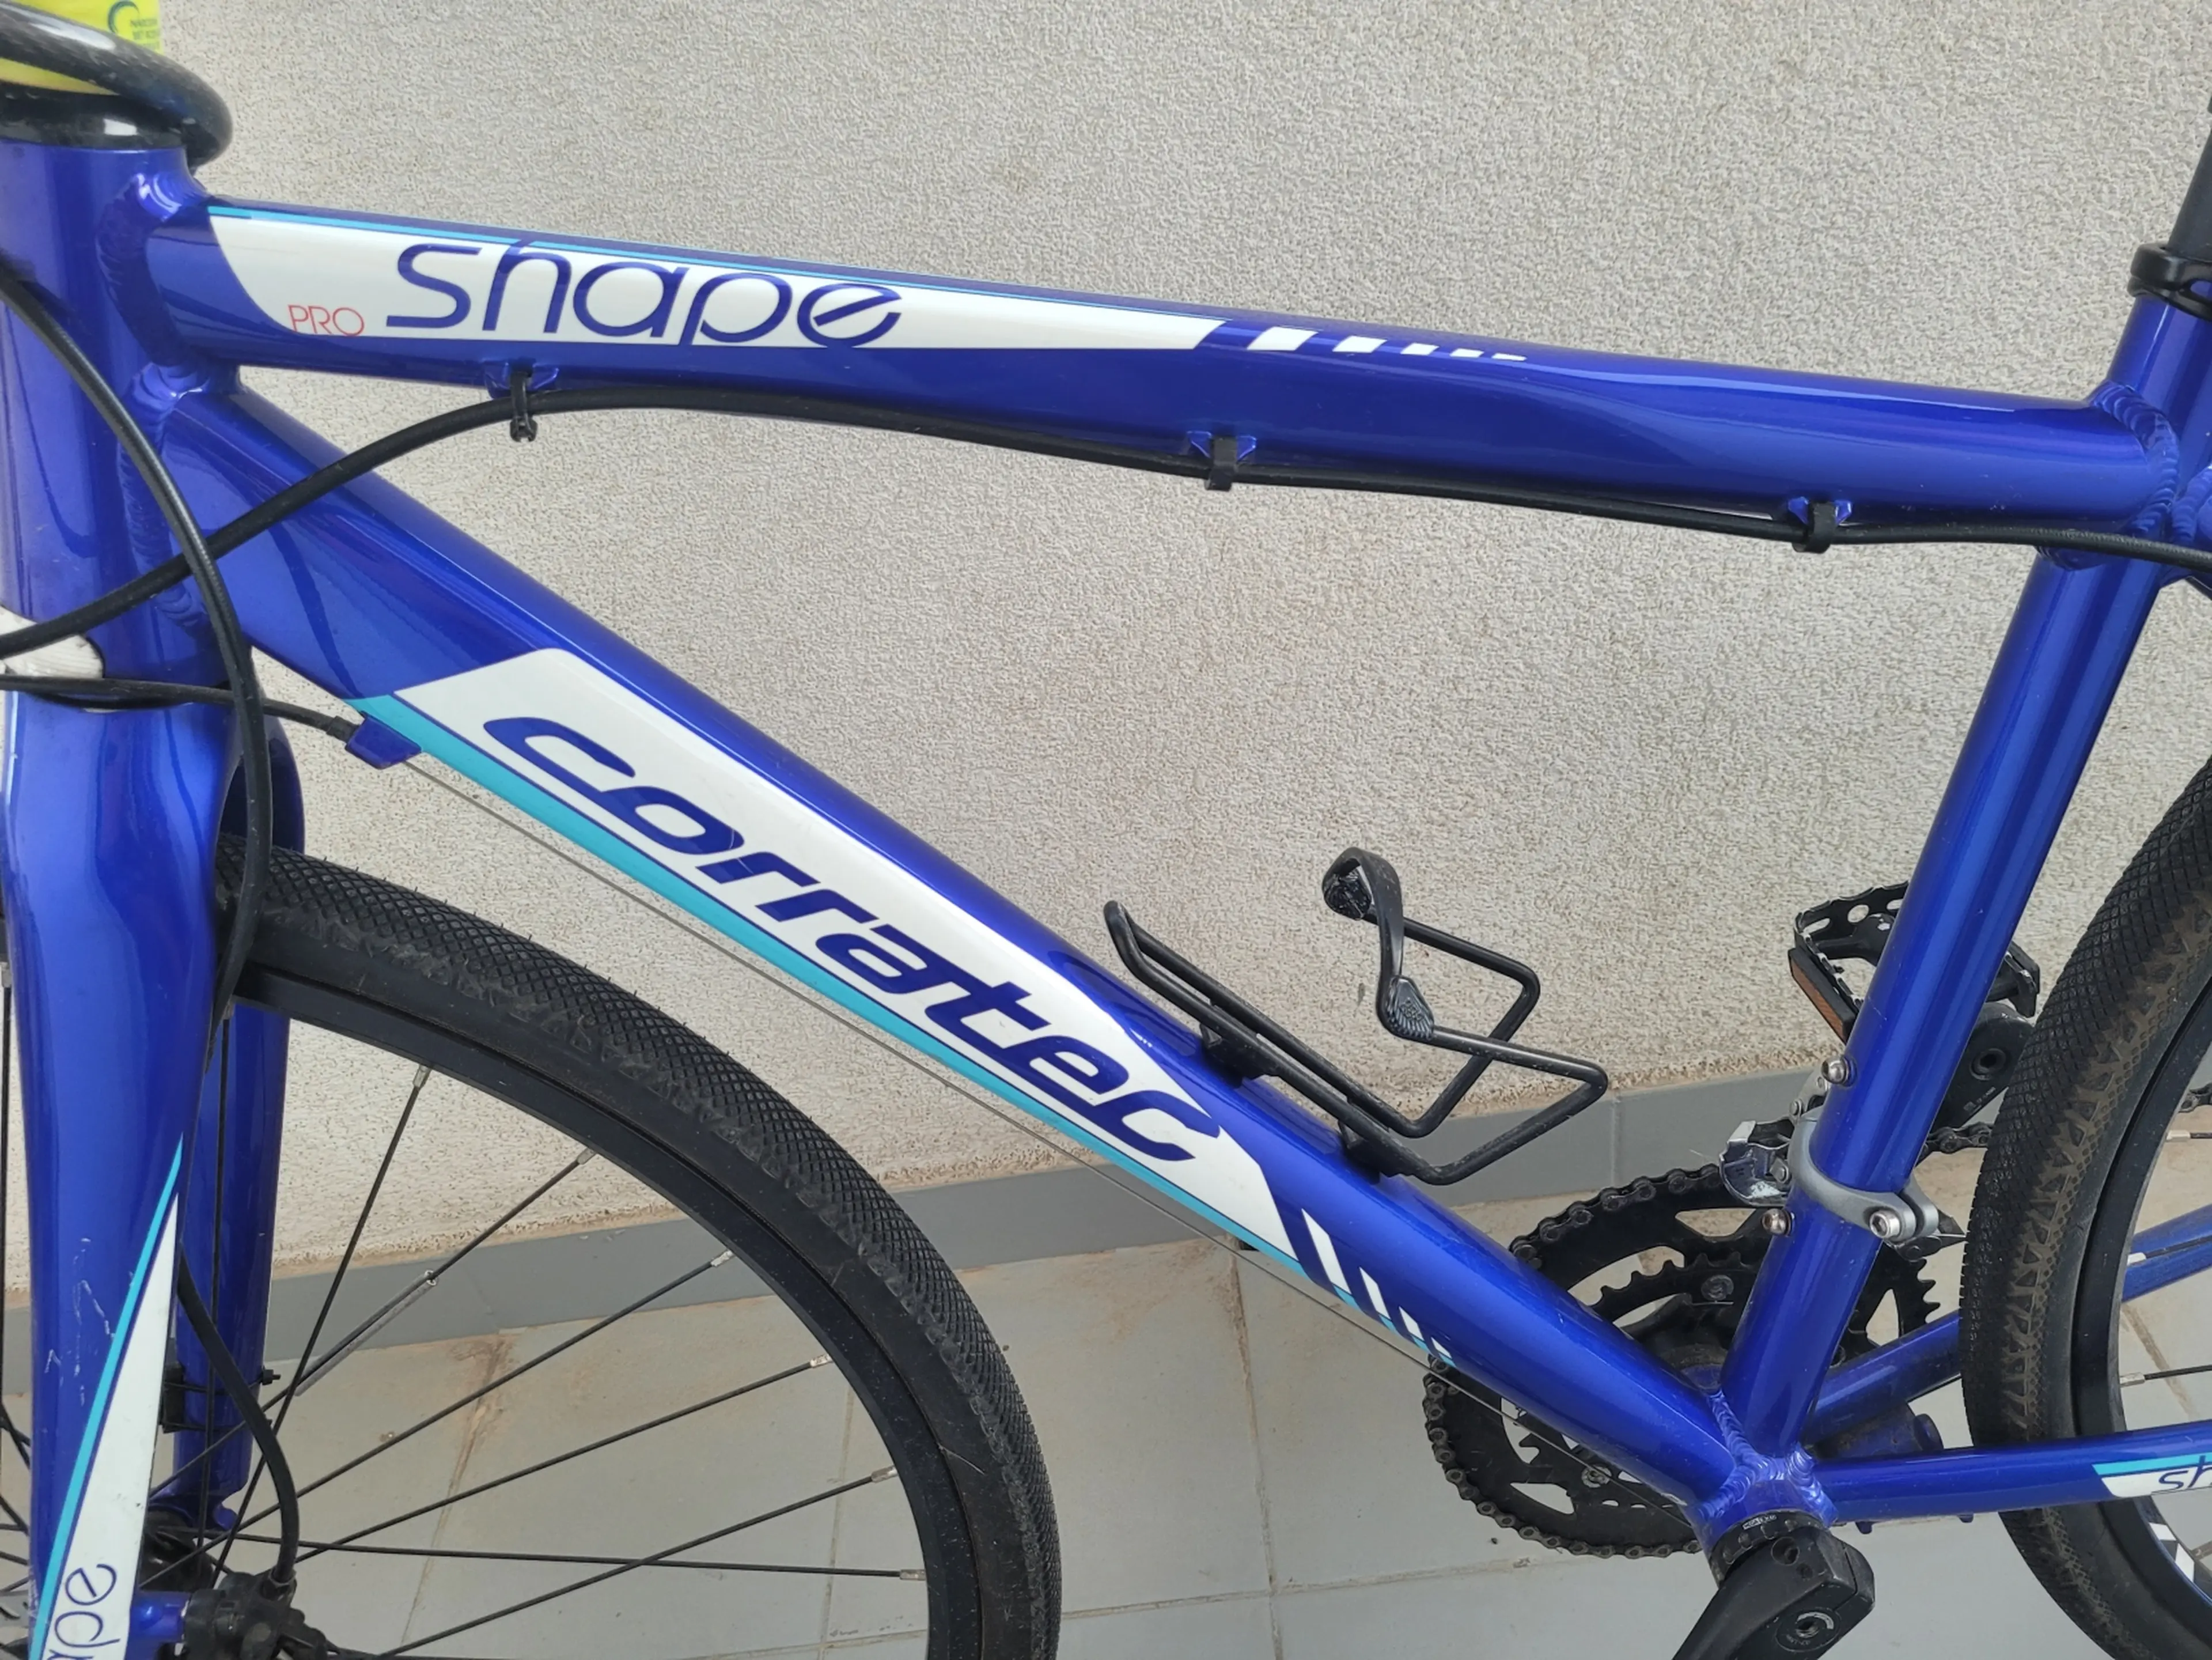 2. Bicicletă Corratec Shape Pro, 28", 11 kg